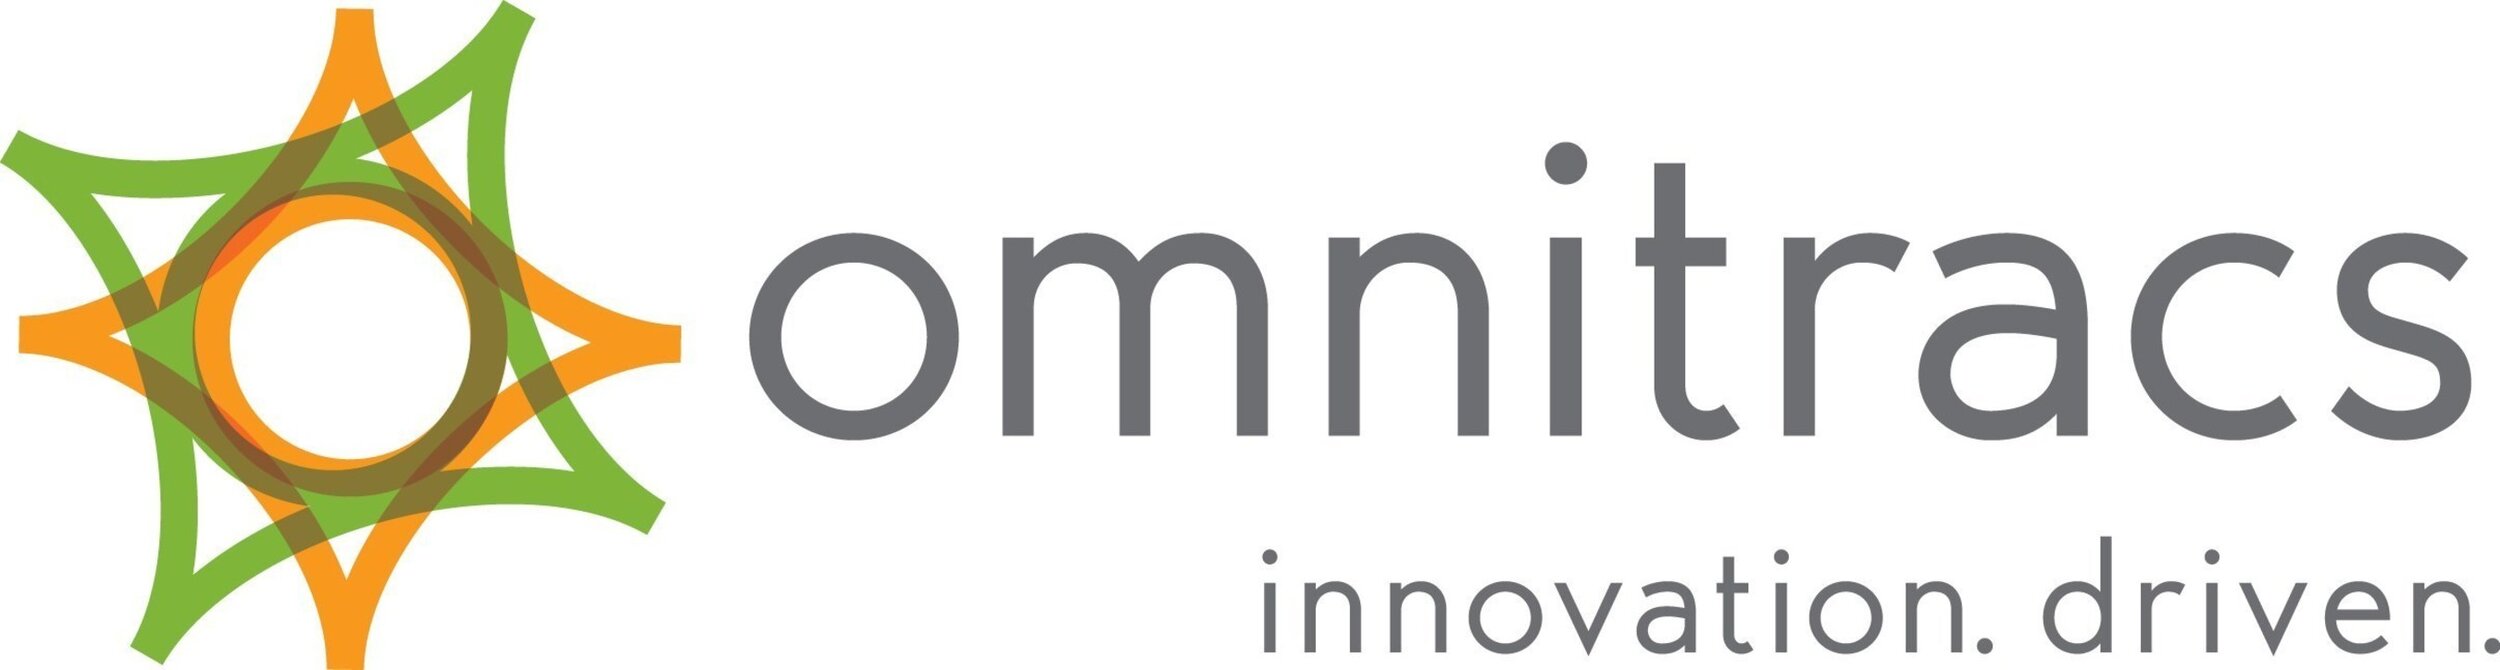 Omnitracs logo.jpg